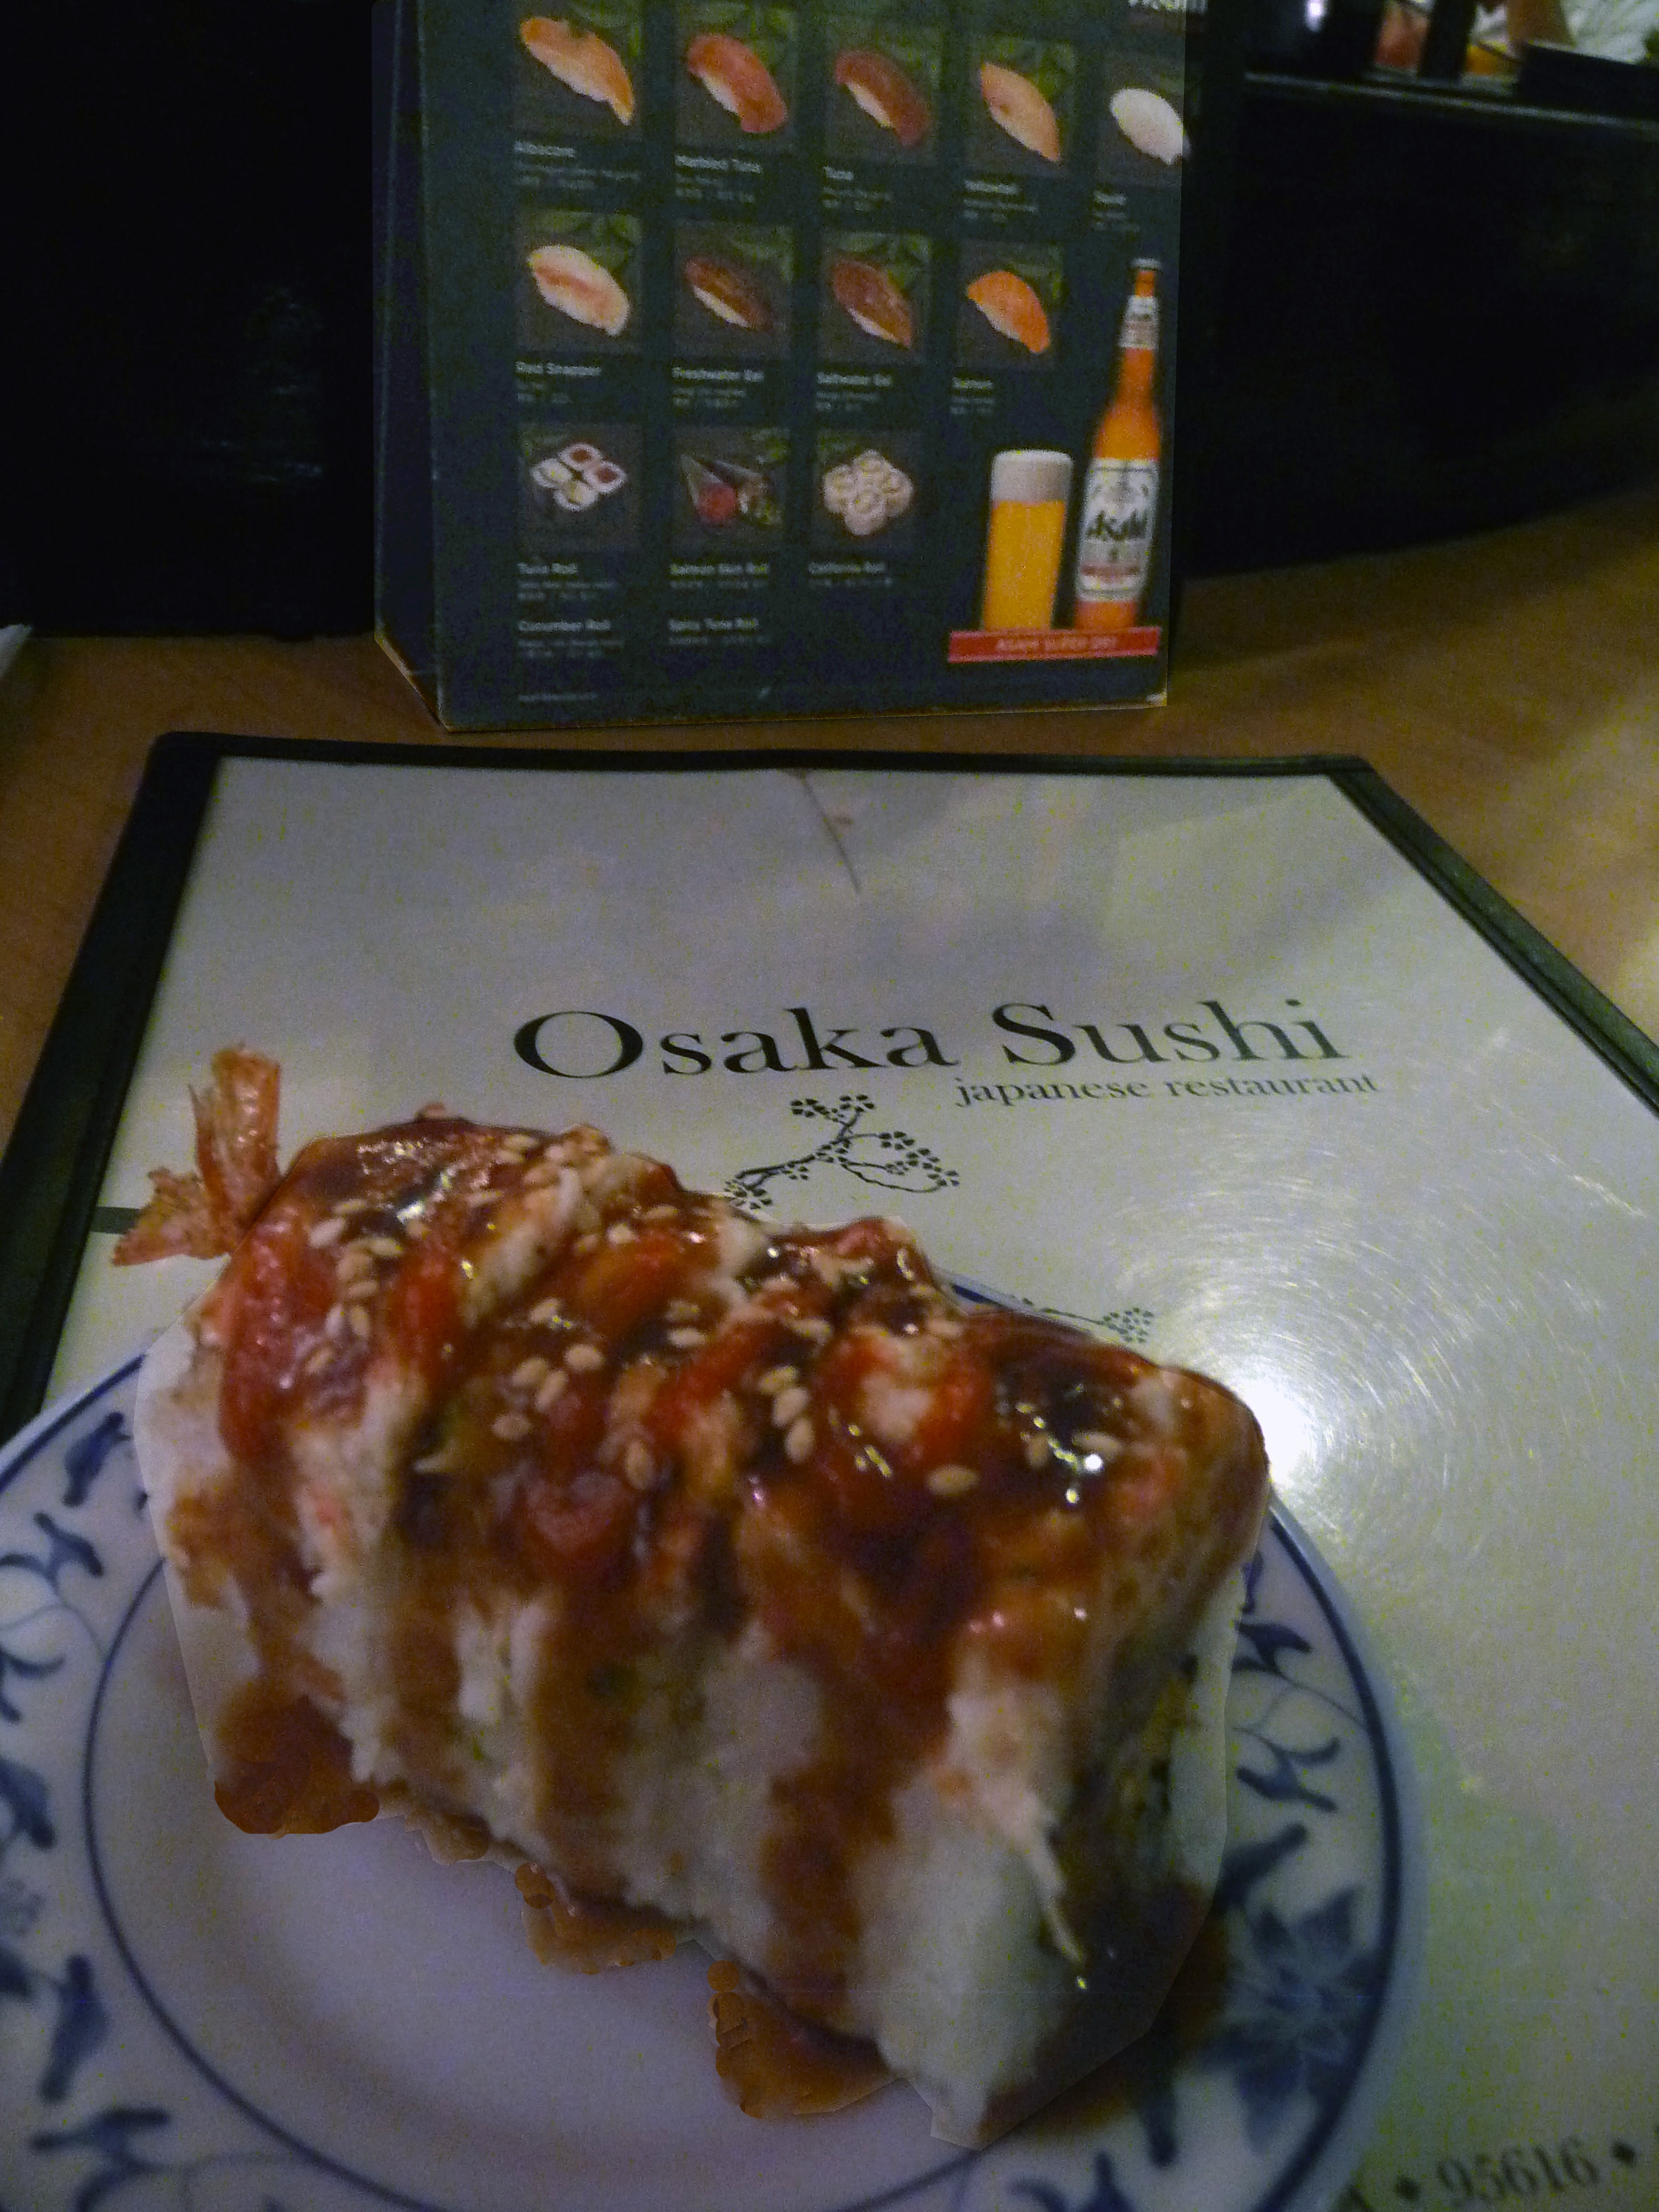 "Osaka Sushi